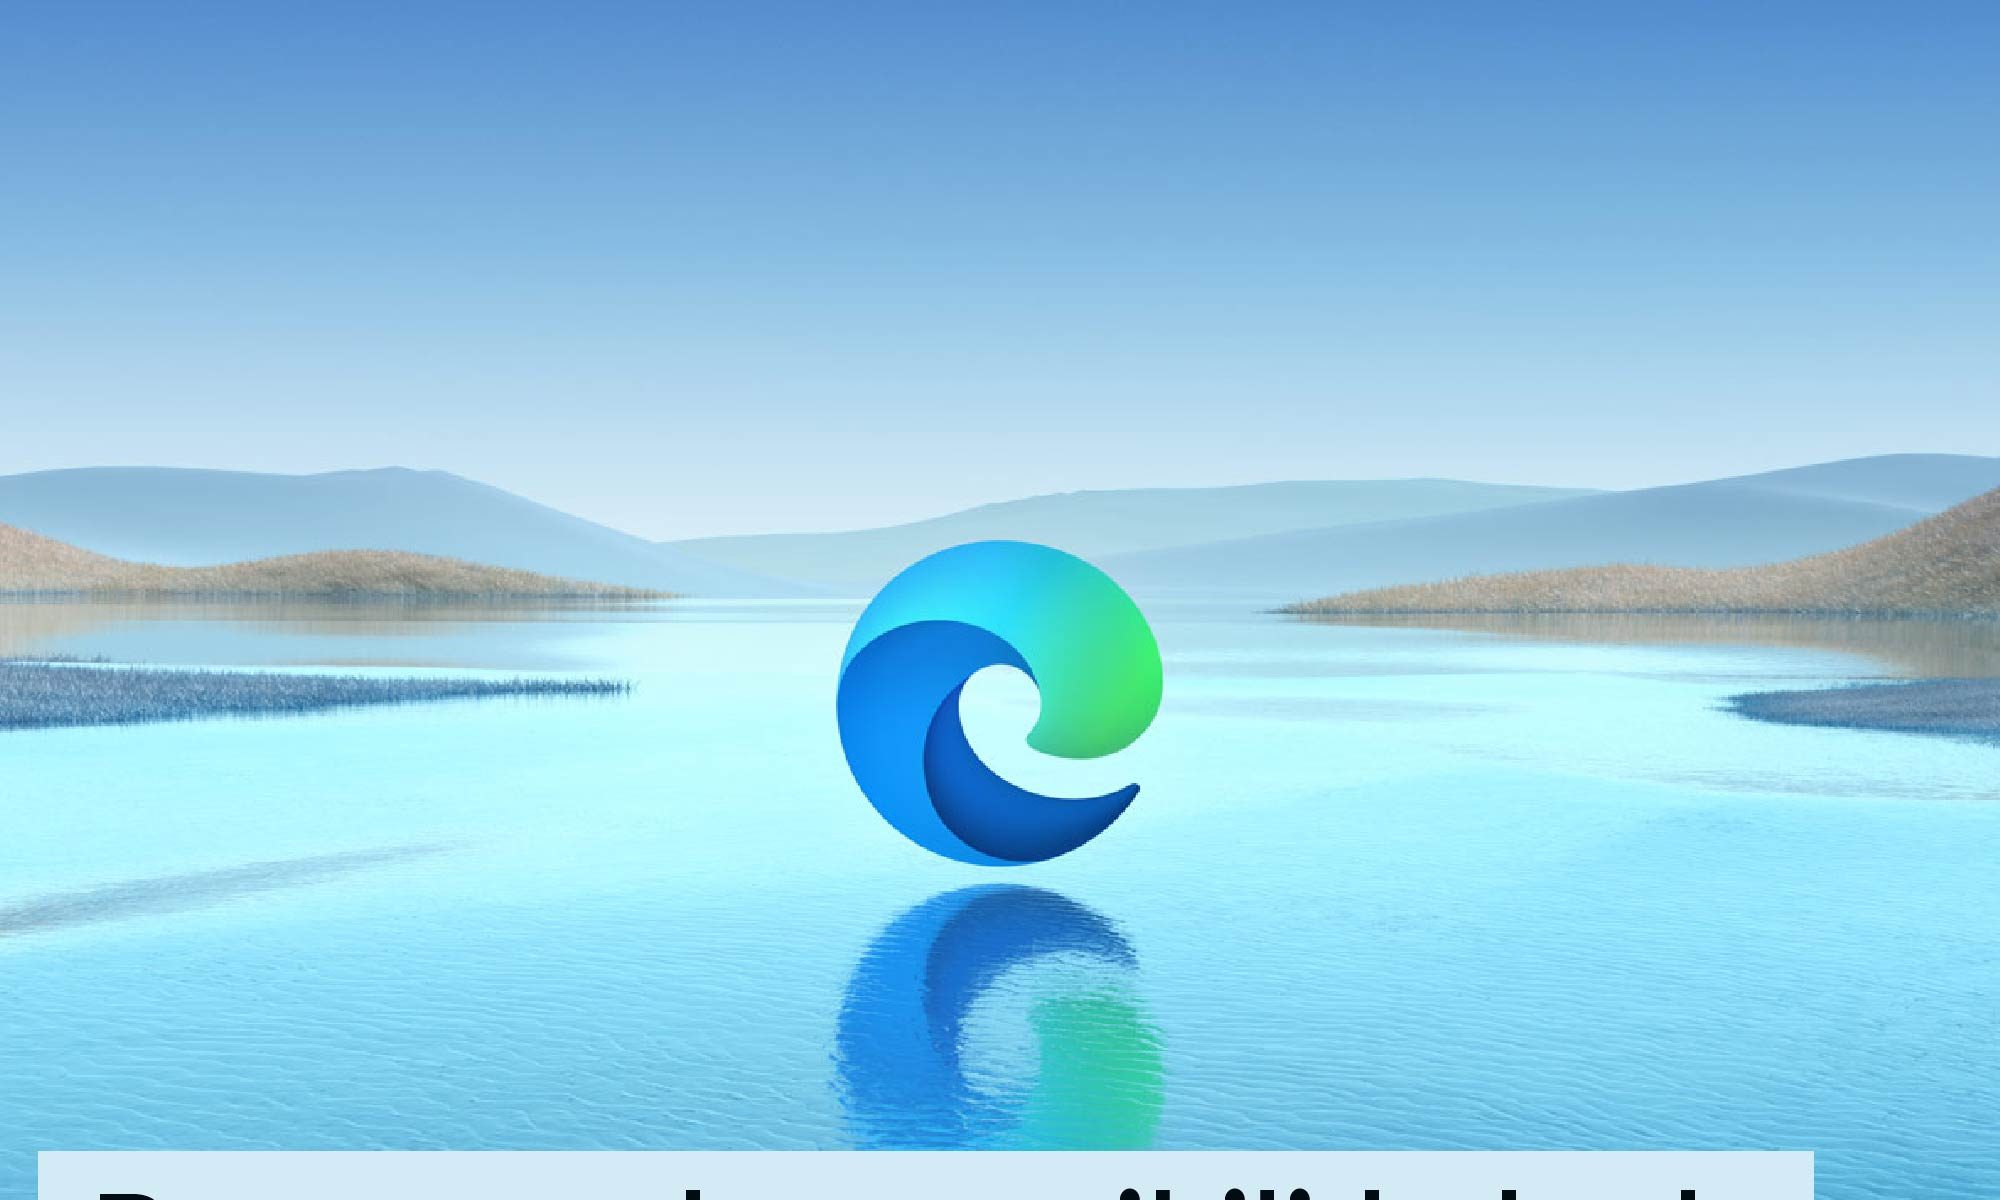 imagem padrão do microsoft edge, msotrando a logo do navegador sobre uma paisagem ampla de uma lago. Está escrito: "Recursos de acessibilidade do Microsoft Edge" #tecnologiaassistiva e há a logo da Retina Brasil